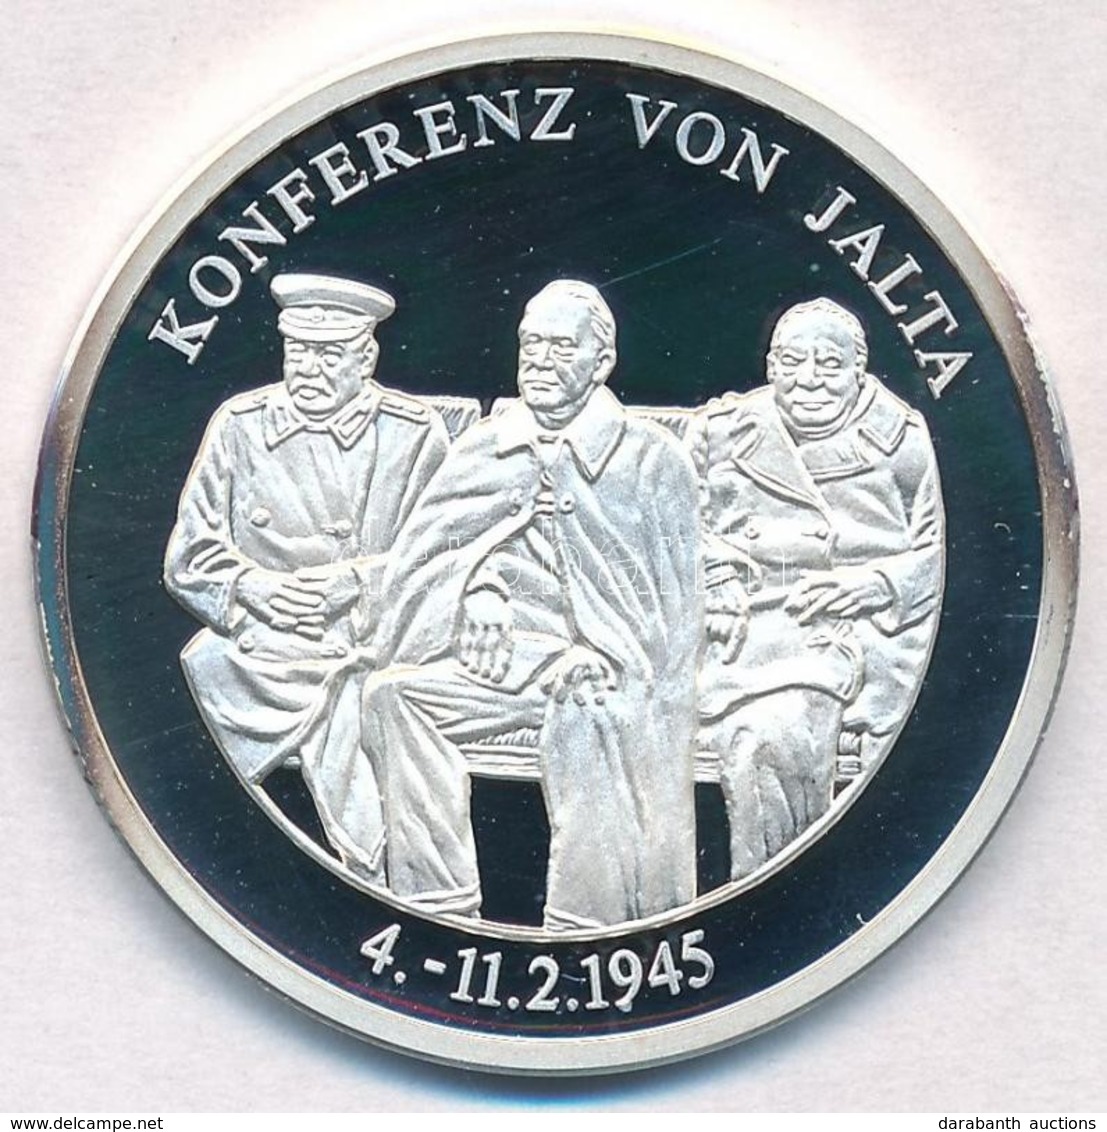 Németország 1994. 'Jaltai Konferencia - Az Amerika Egyesült Államok Elnökei' Jelzett Ag Emlékérem, Tanúsítvánnyal (15g/0 - Unclassified